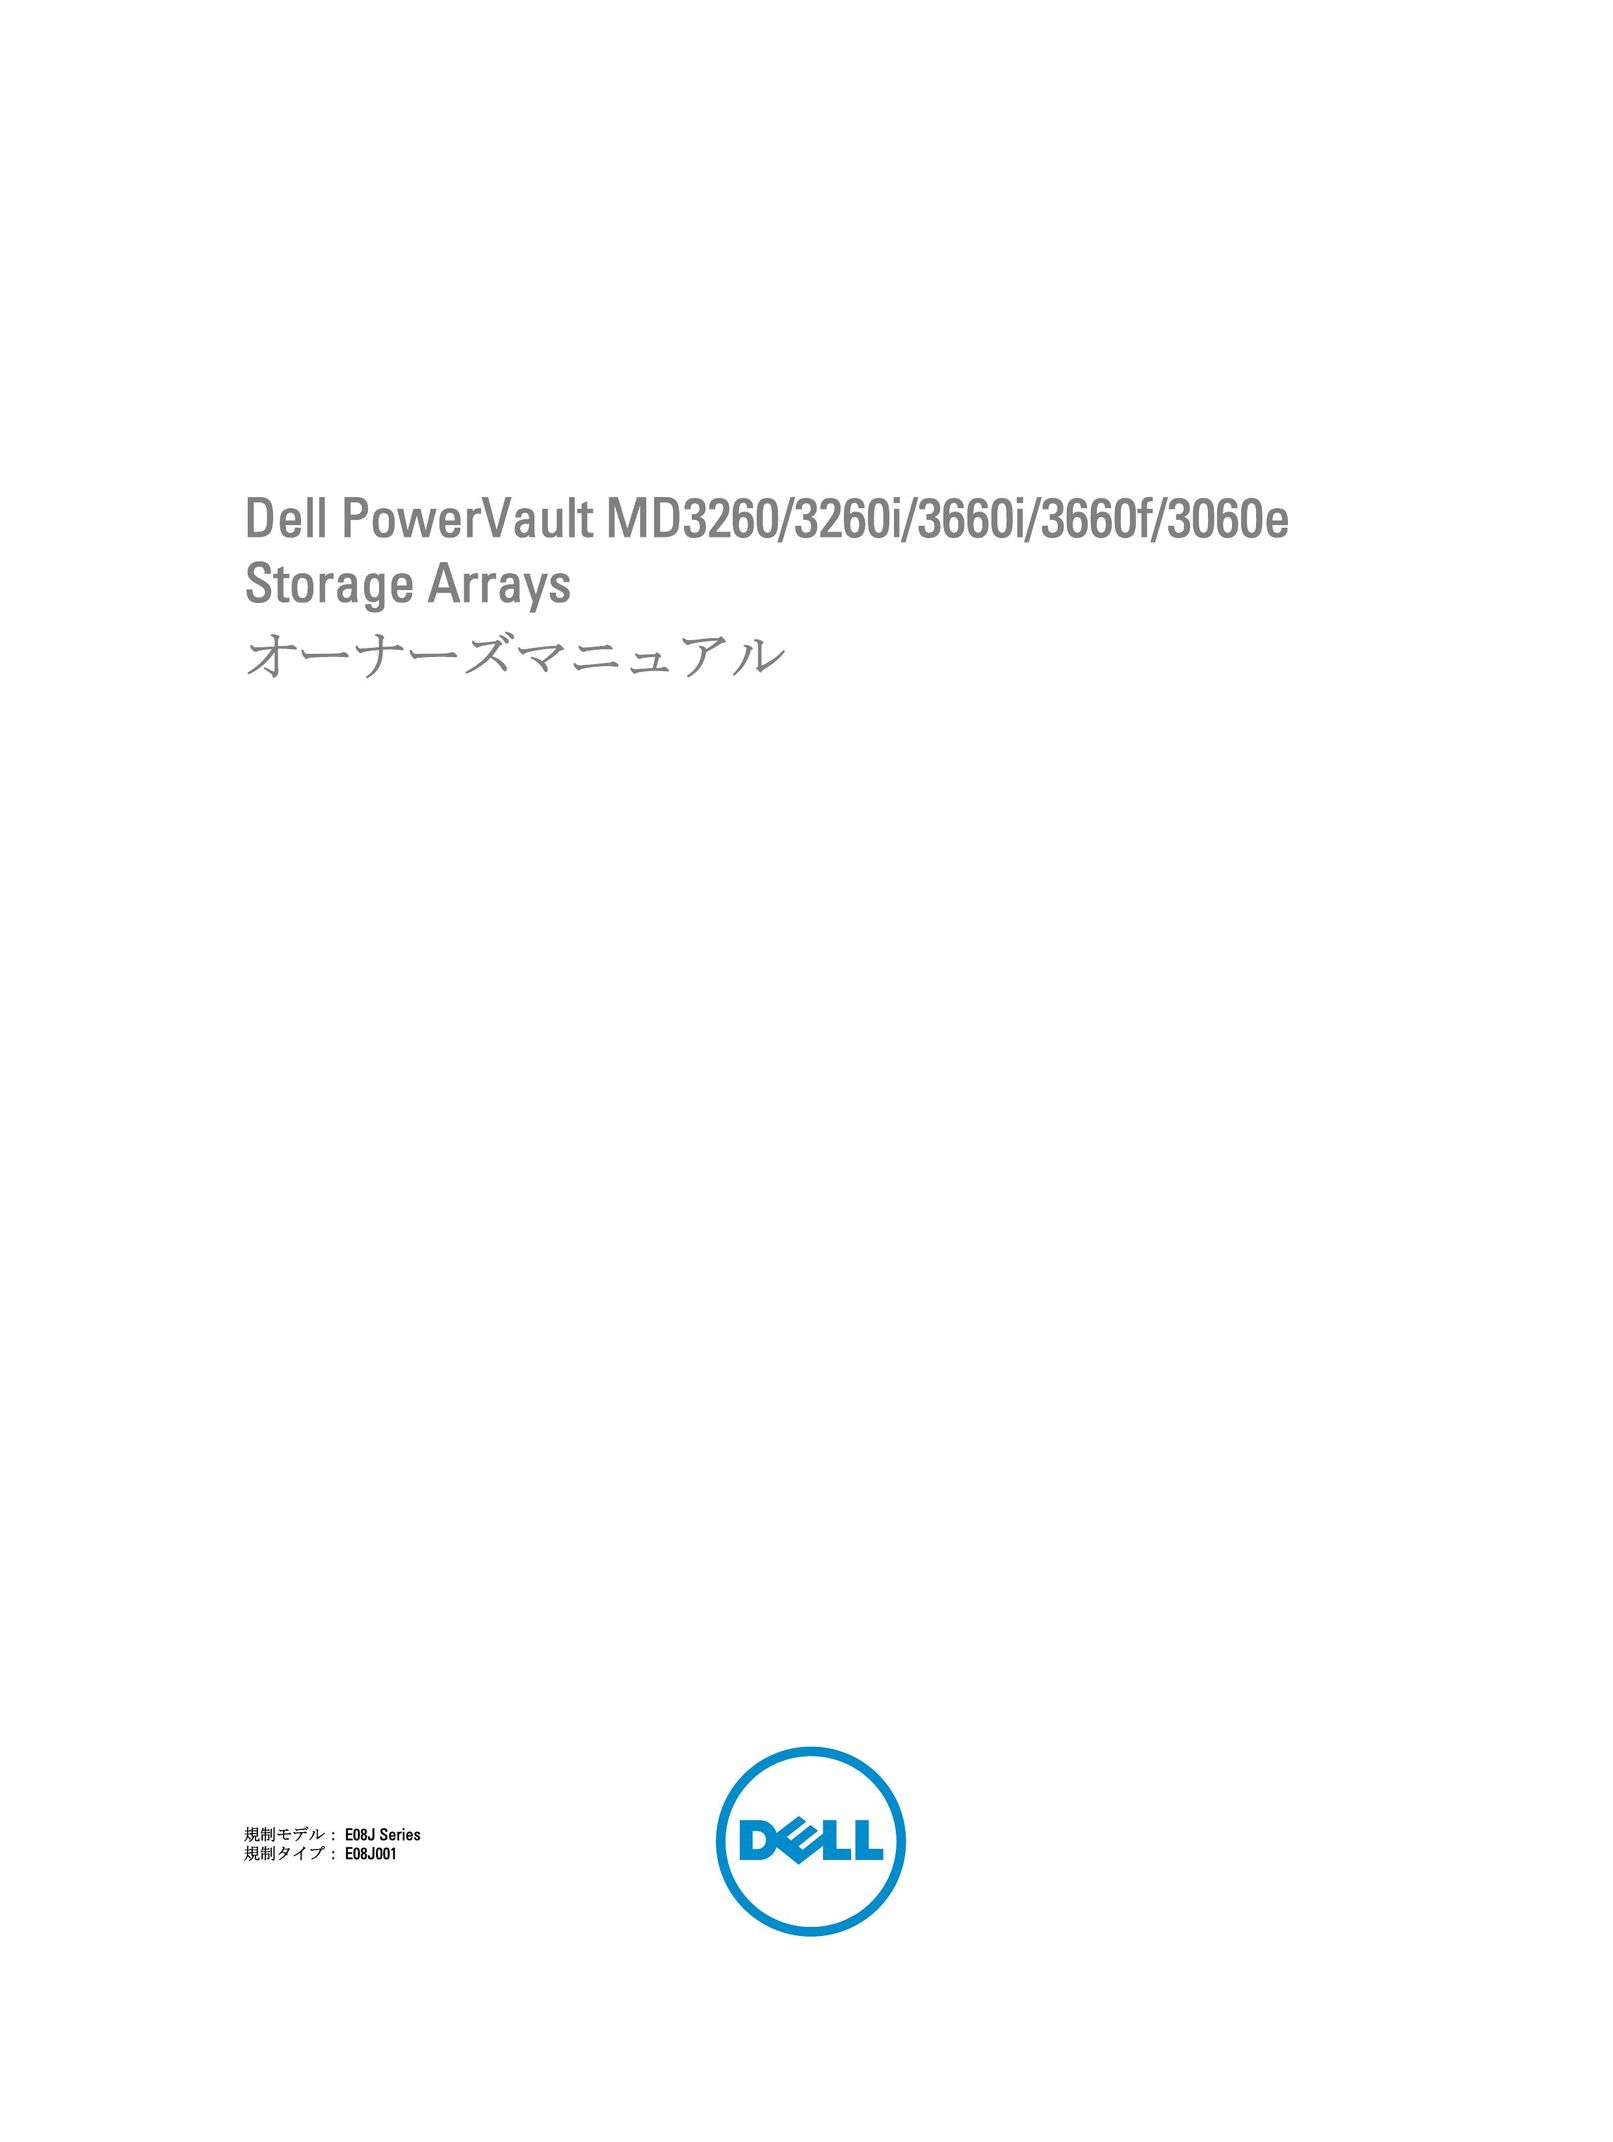 Dell 3060e Computer Drive User Manual